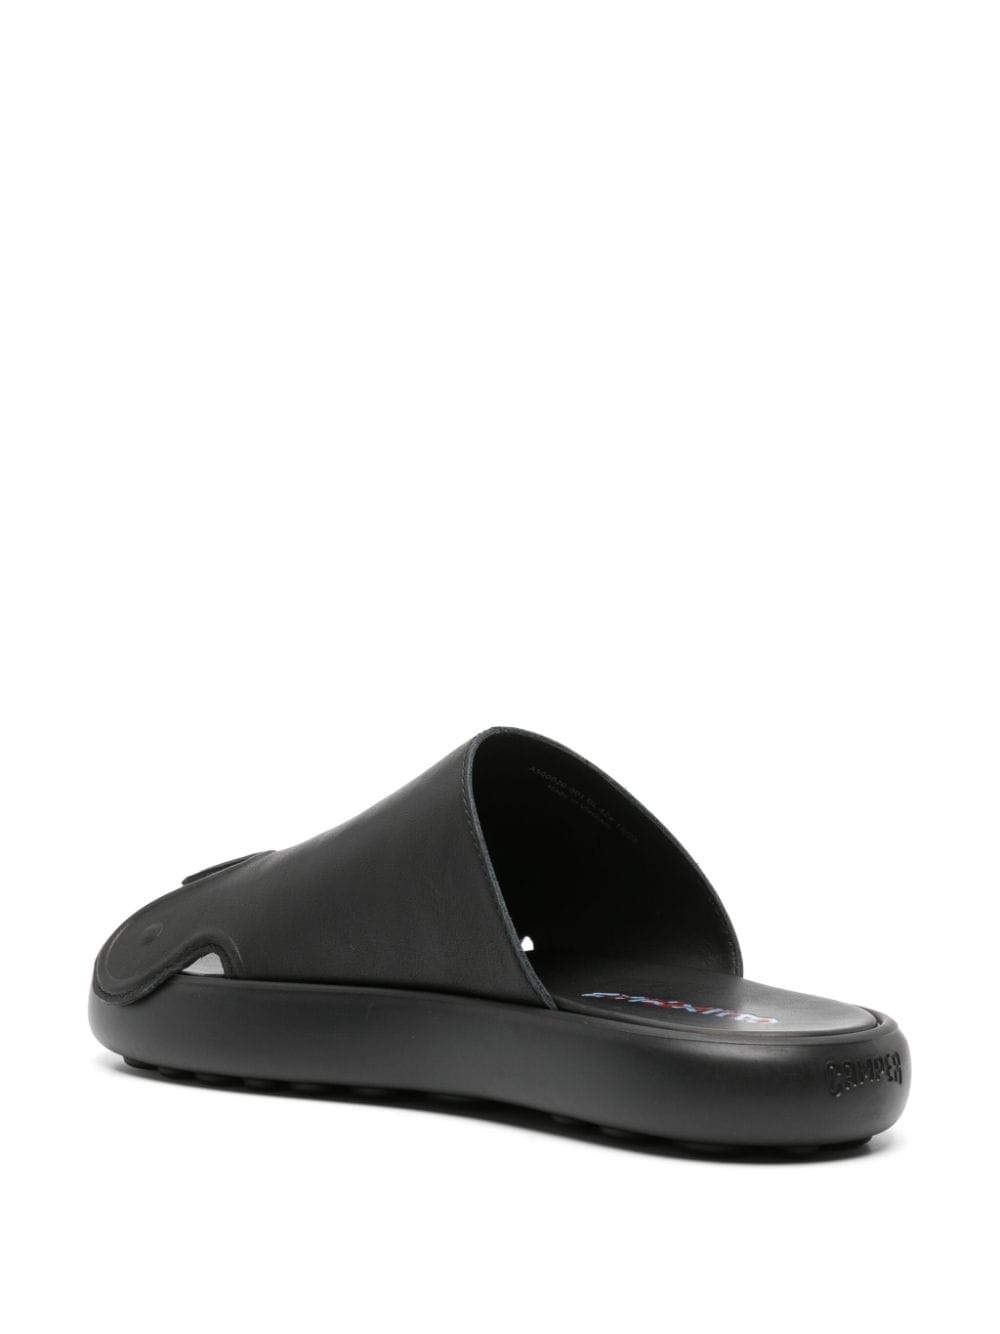 Pelotas Flota toes-shaped leather slides - 3